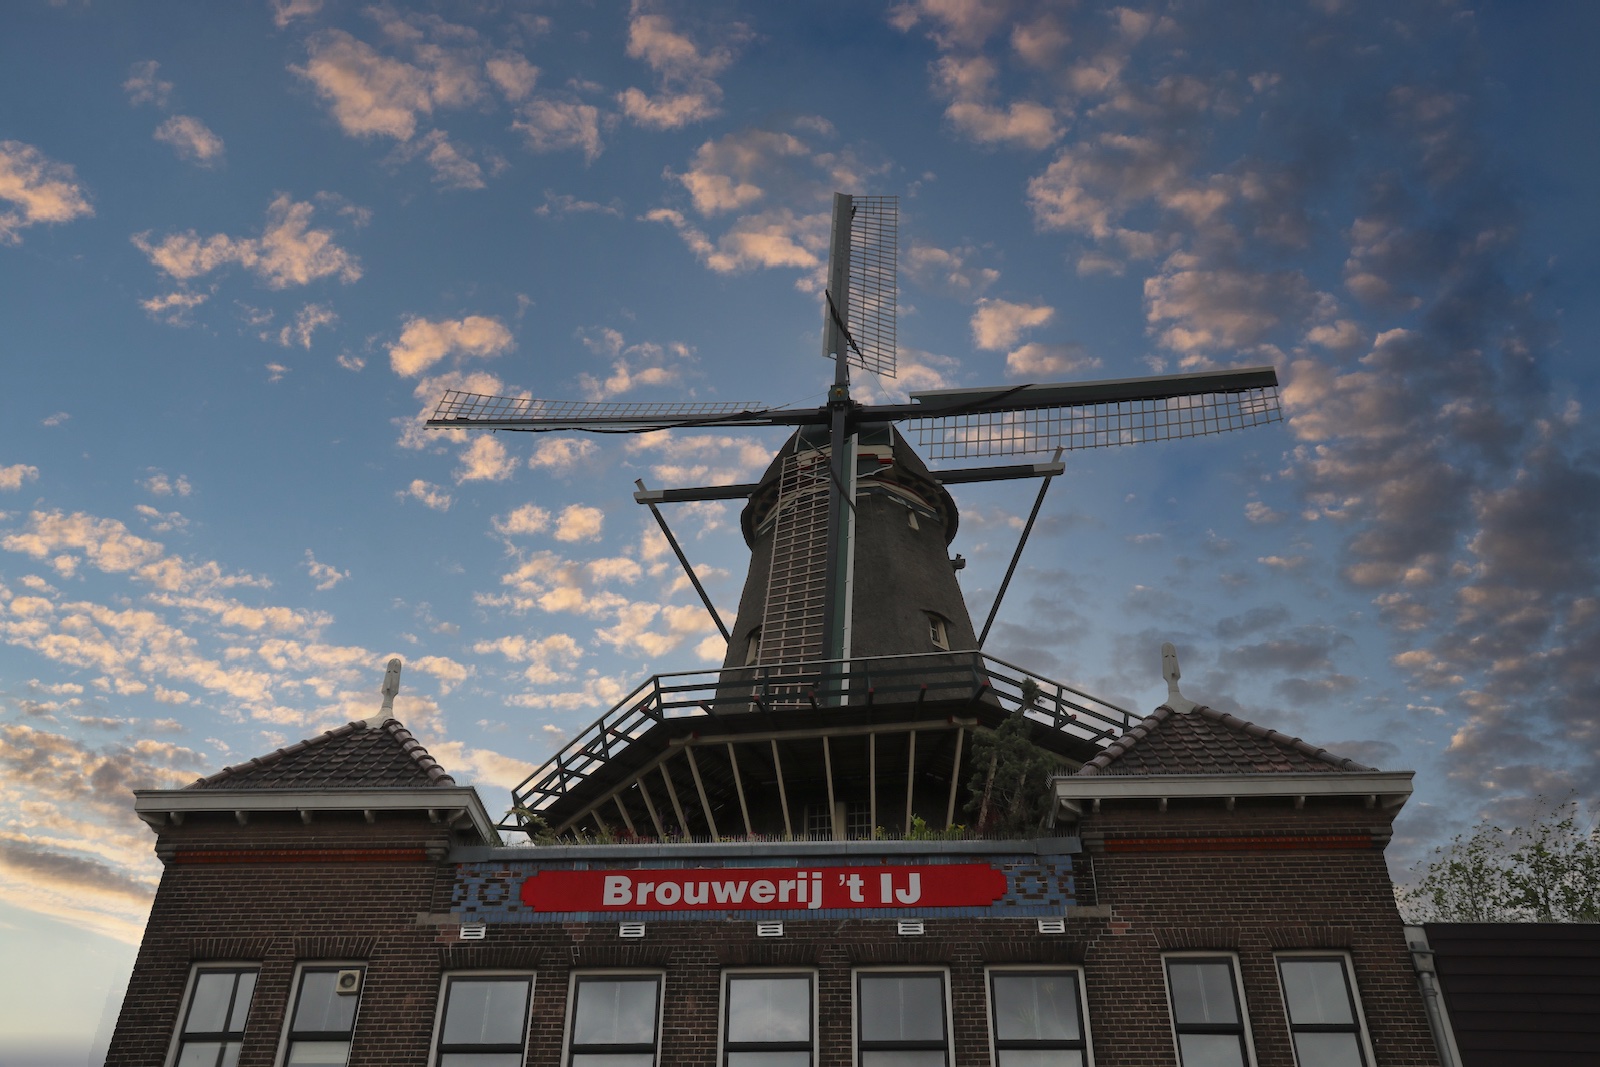 De iconische windmolen naast Brouwerij 't IJ